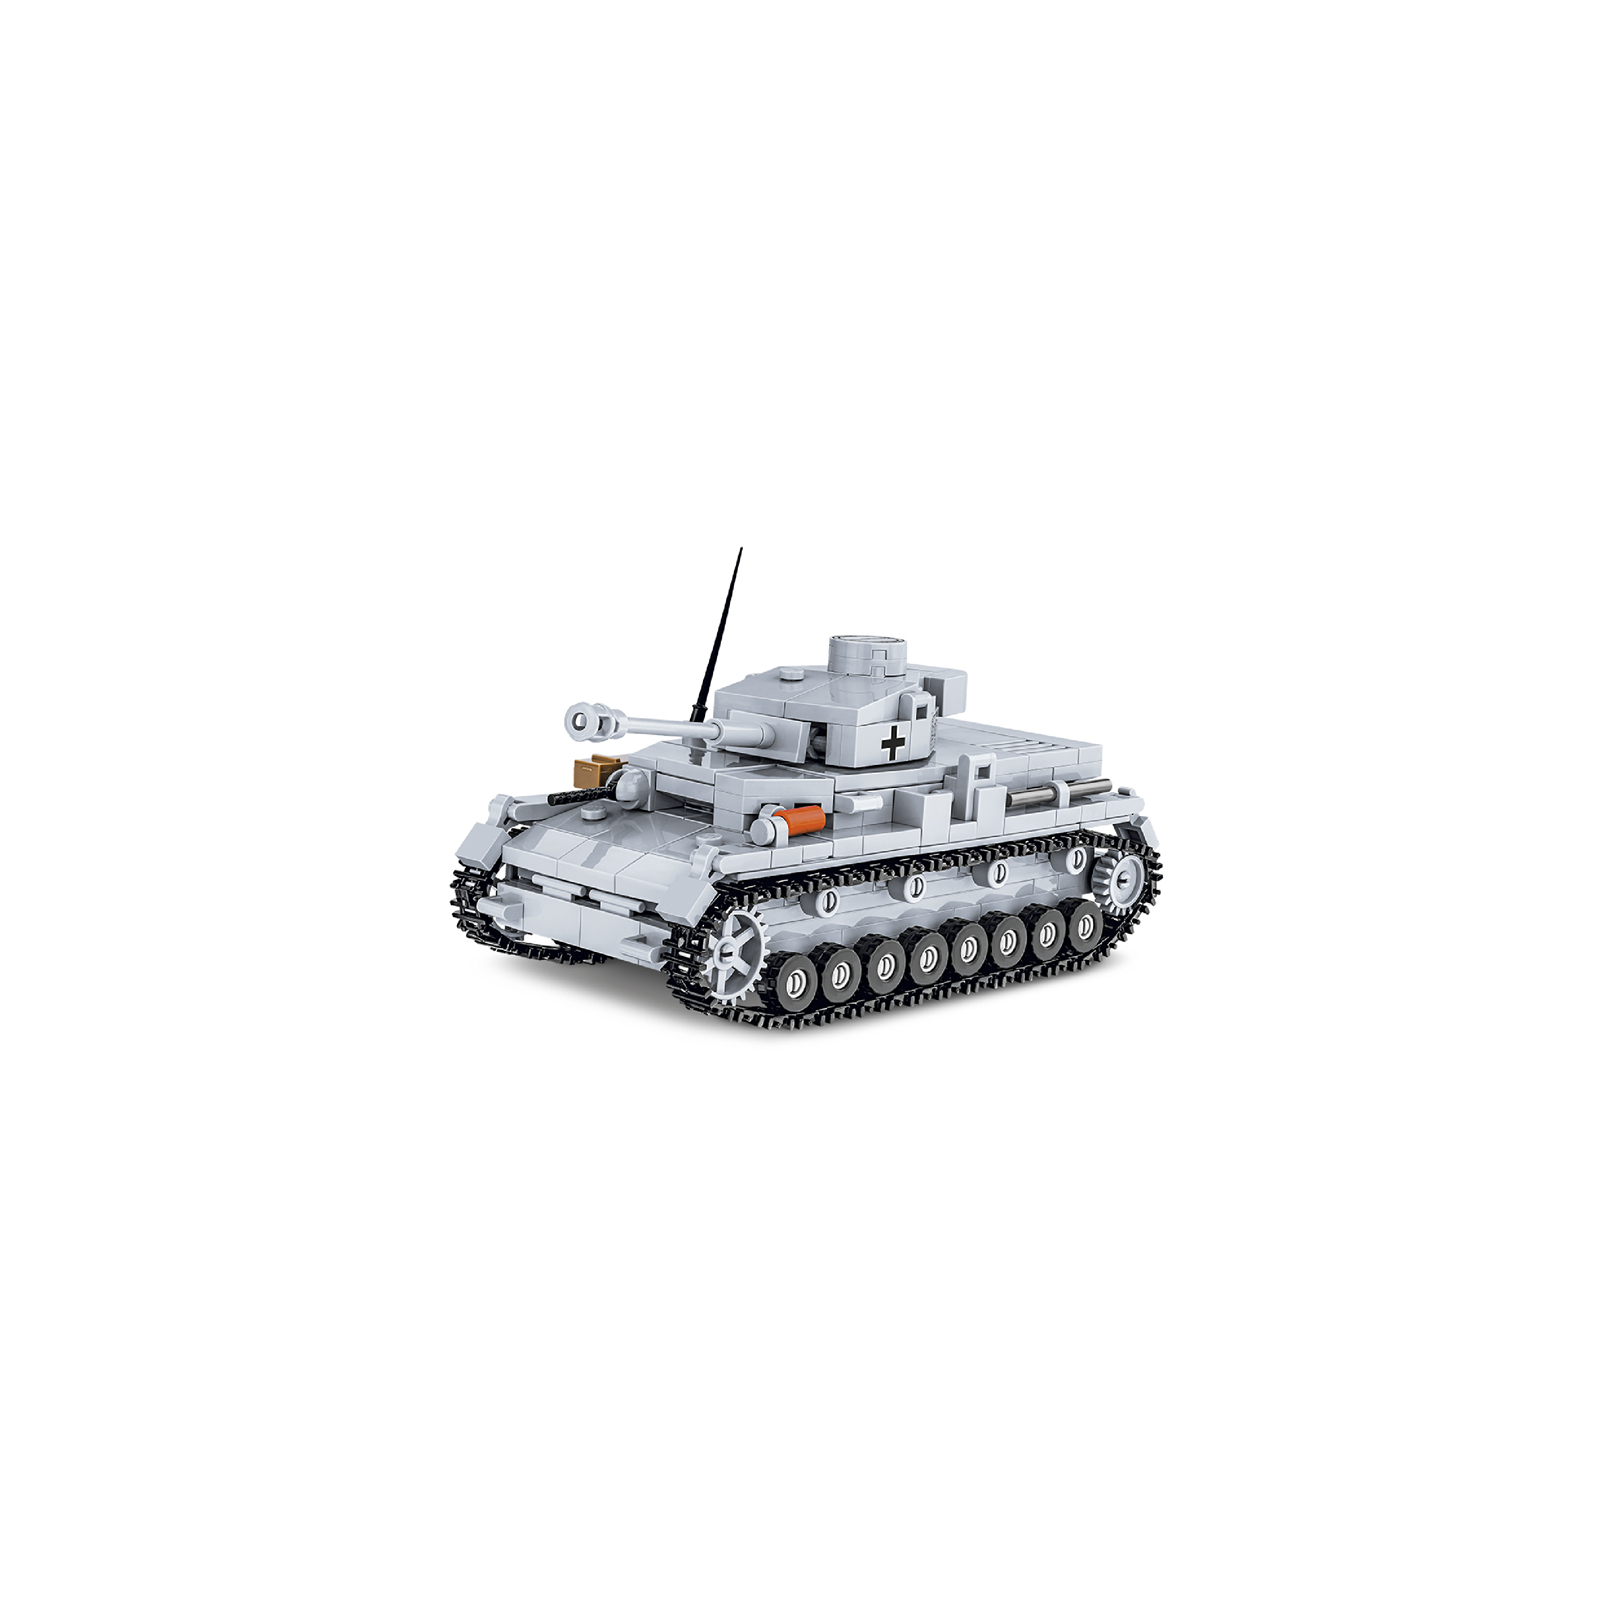 Конструктор Cobi Вторая Мировая Война Танк Panzer IV, 390 деталей (COBI-2714) изображение 3